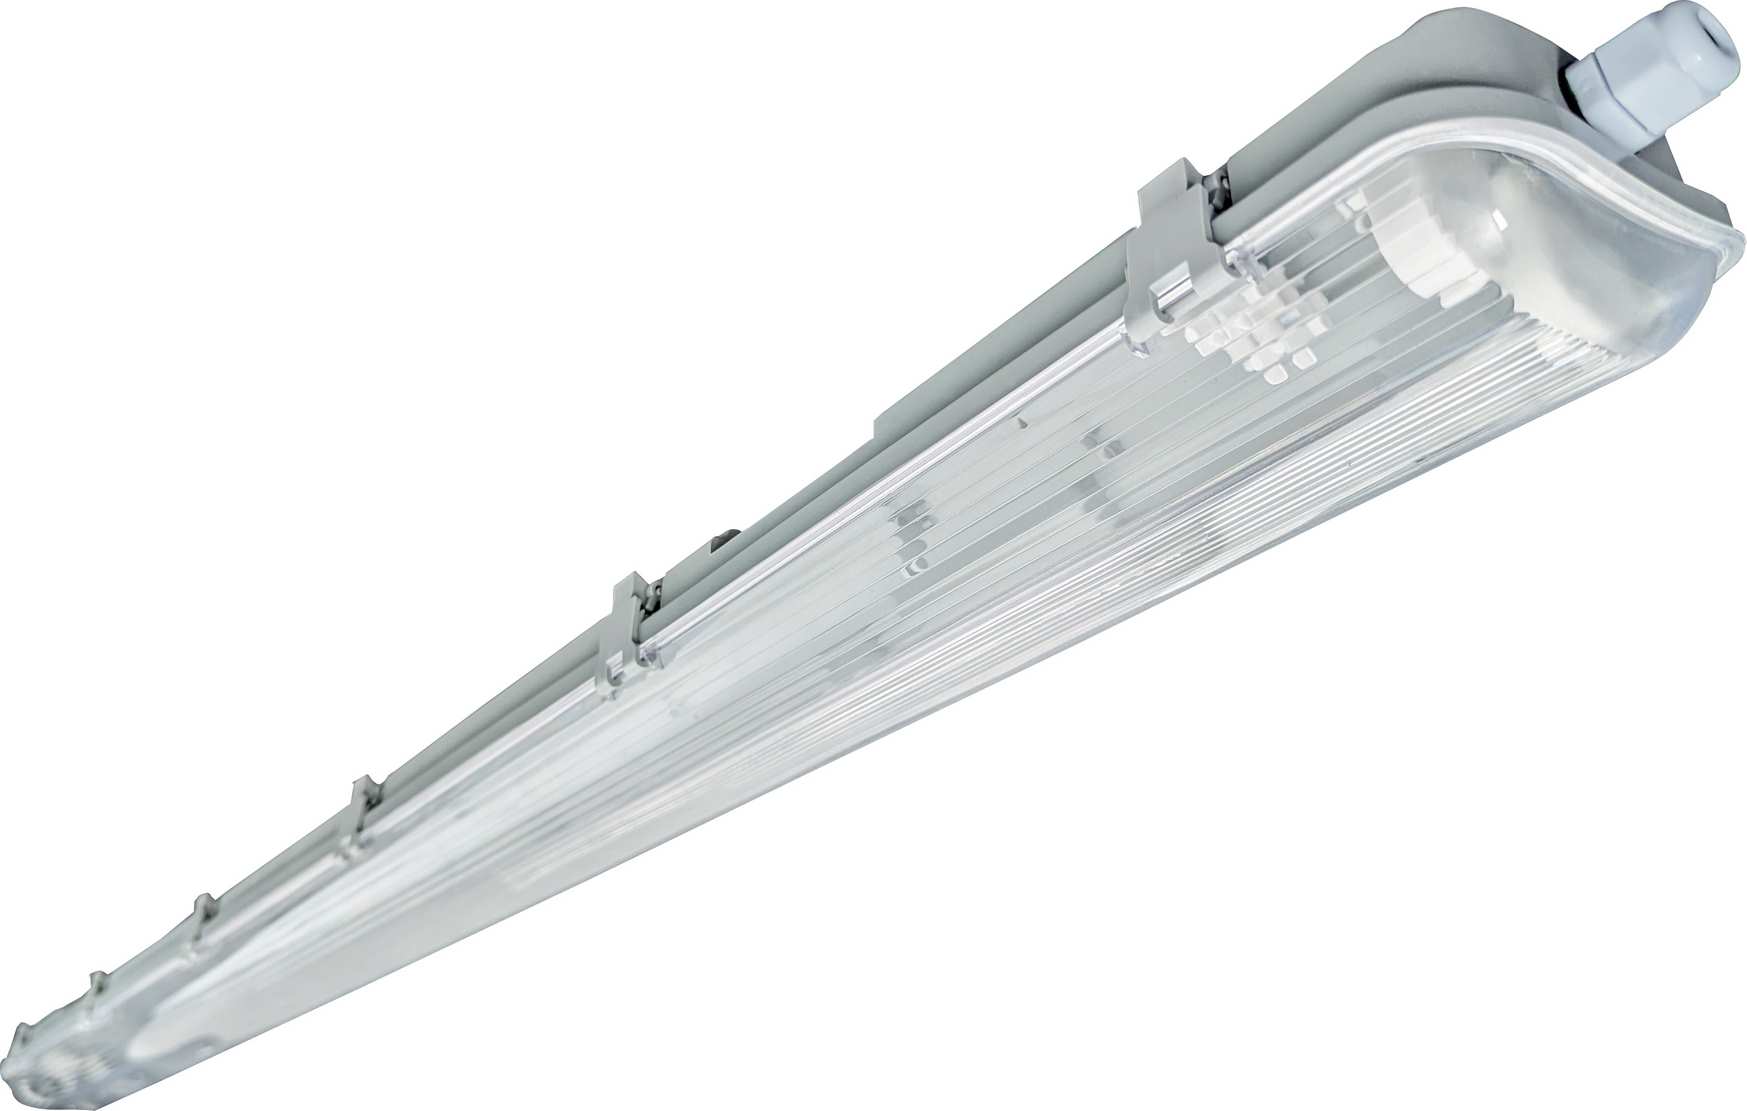 Prachotìsné svítidlo HERMETIC LED 2xT8/120cm, pro LED trubice, IP65, Greenlux GXEK002 - zvìtšit obrázek